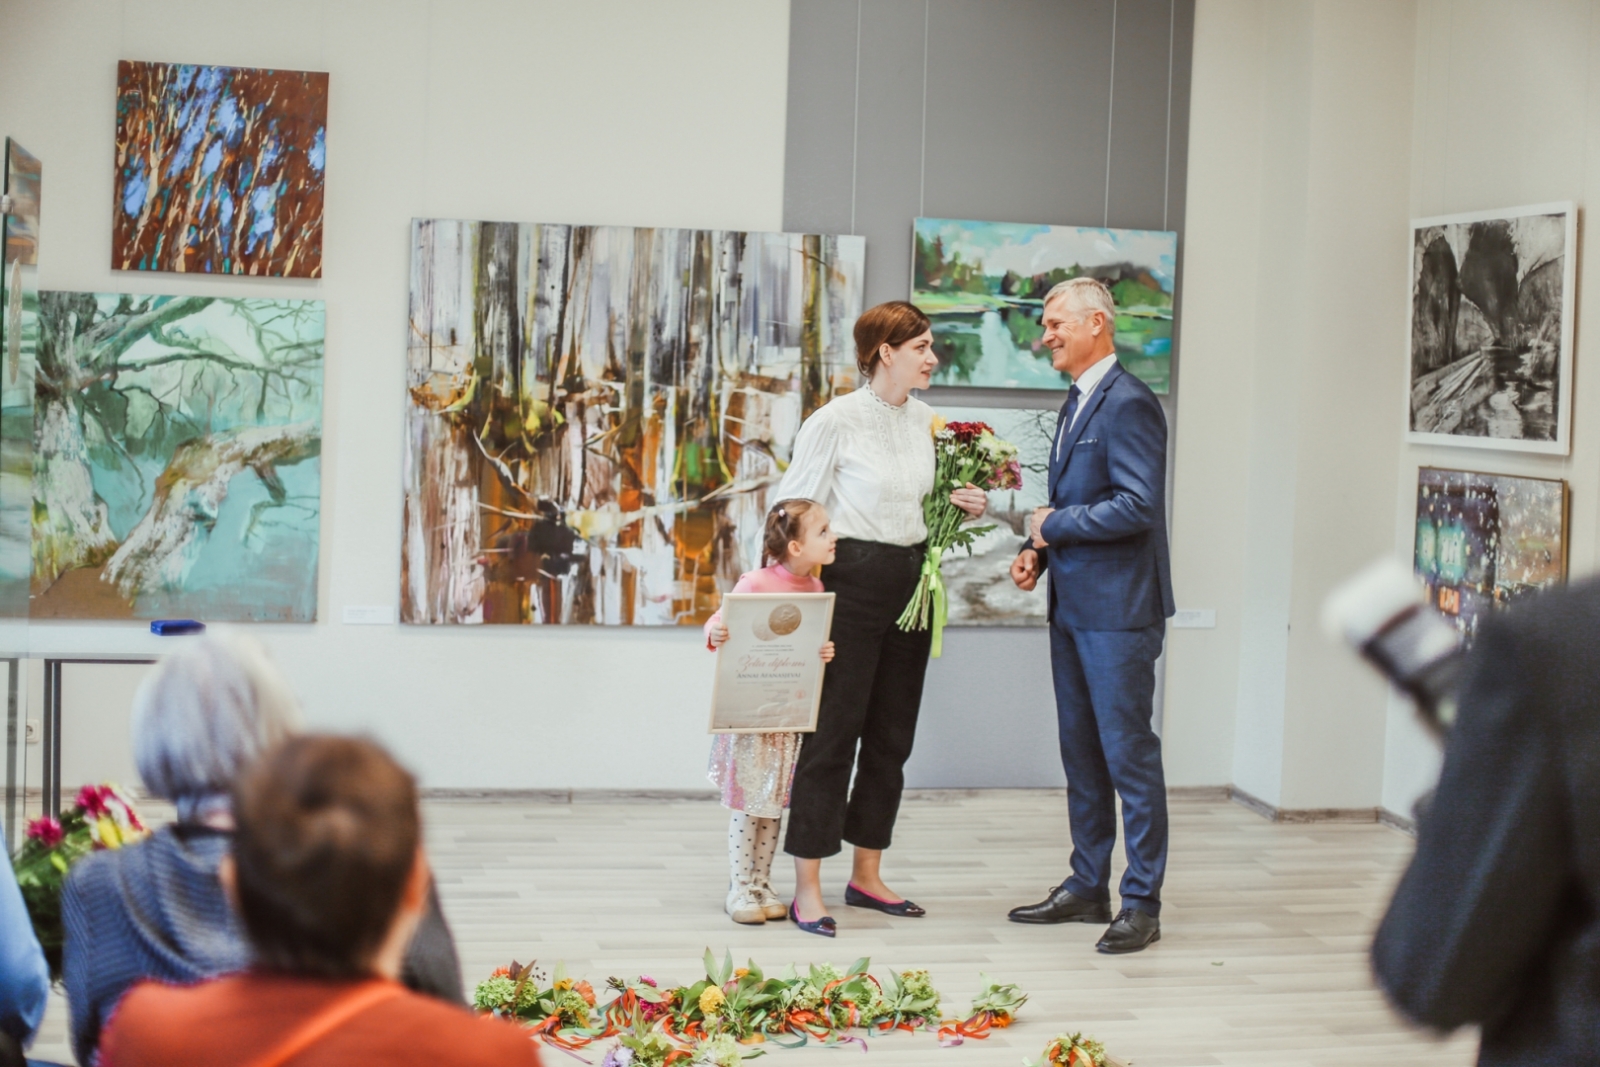 Jāzepa Pīgožņa balvas Latvijas ainavu glezniecībā pasniegšanas ceremonija